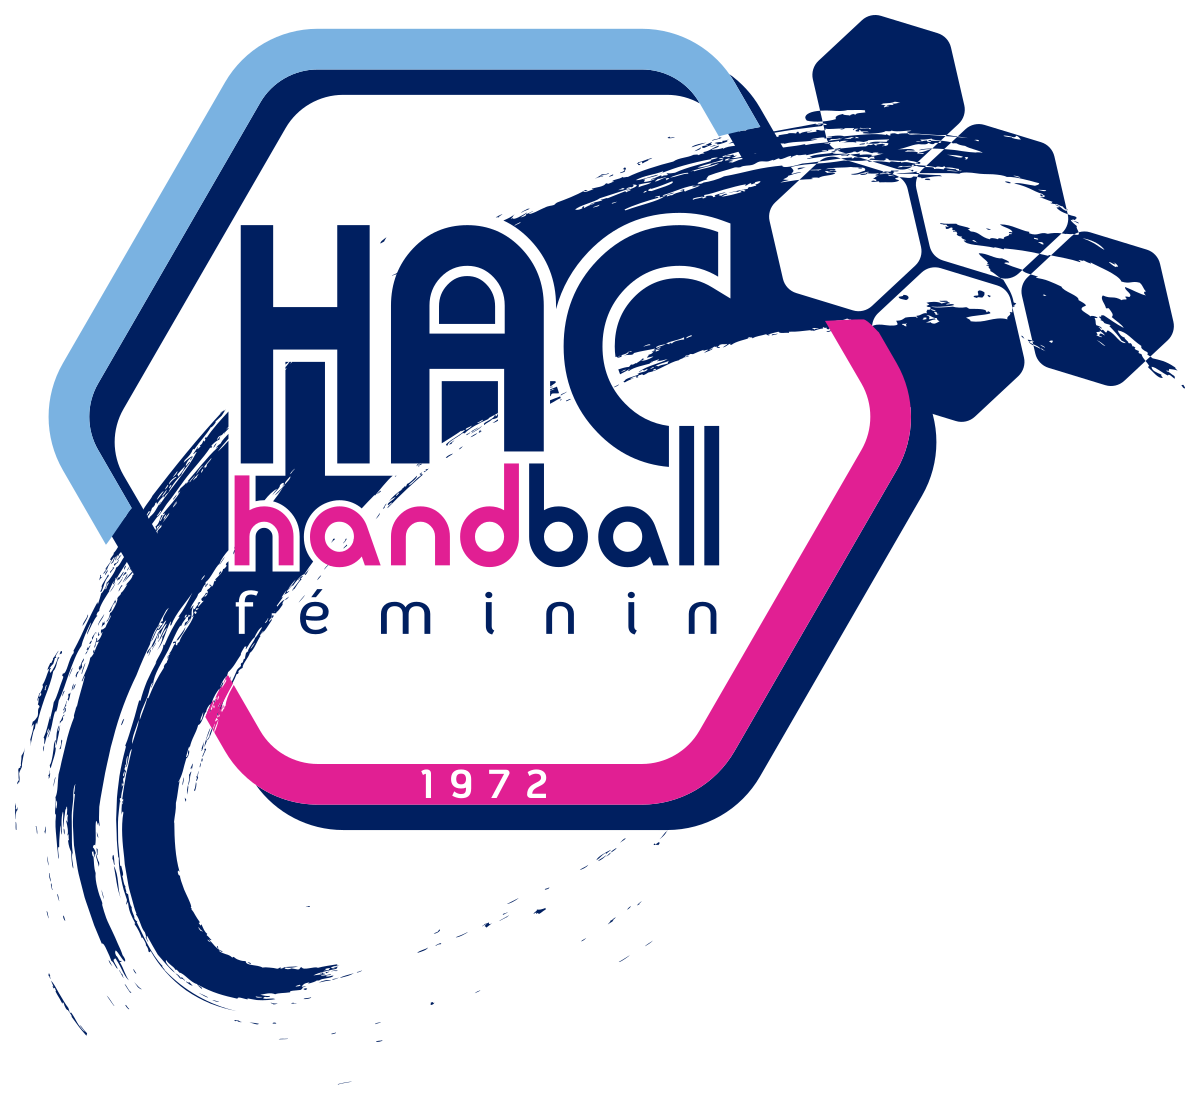 Le Havre Athlétique Club HandBall